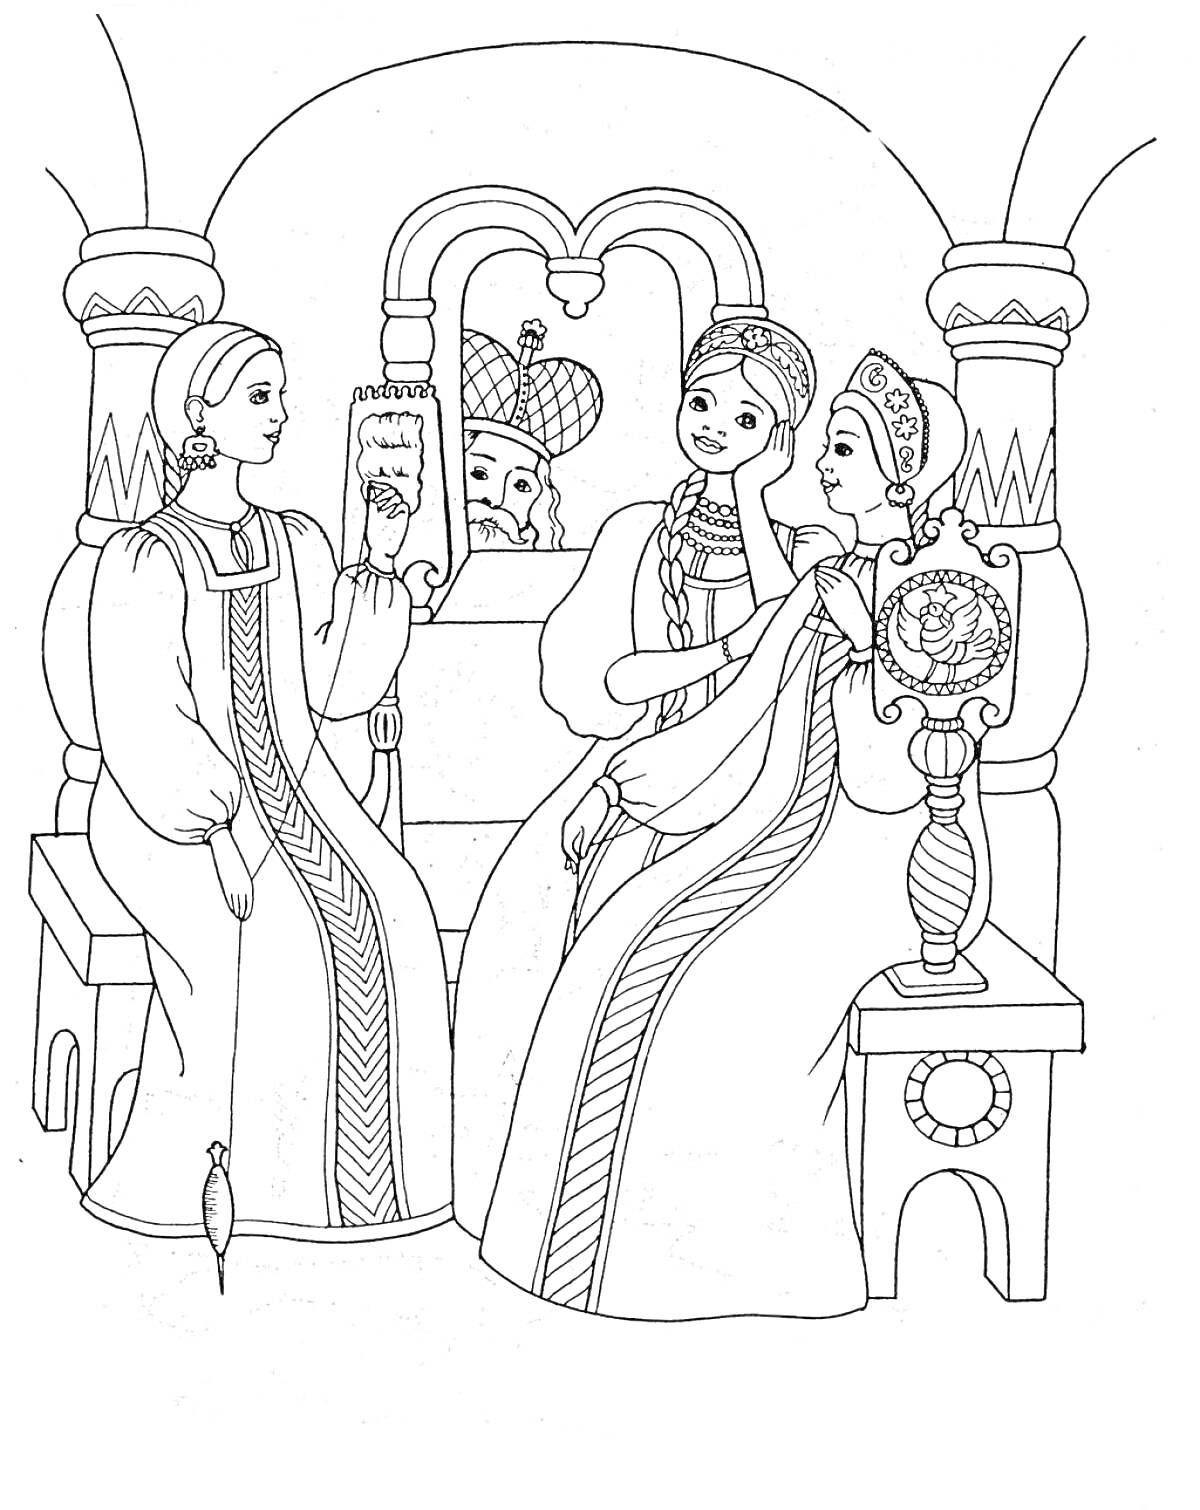 Три женщины, сидящие на лавке, одна читает, позади выглядывает царь.